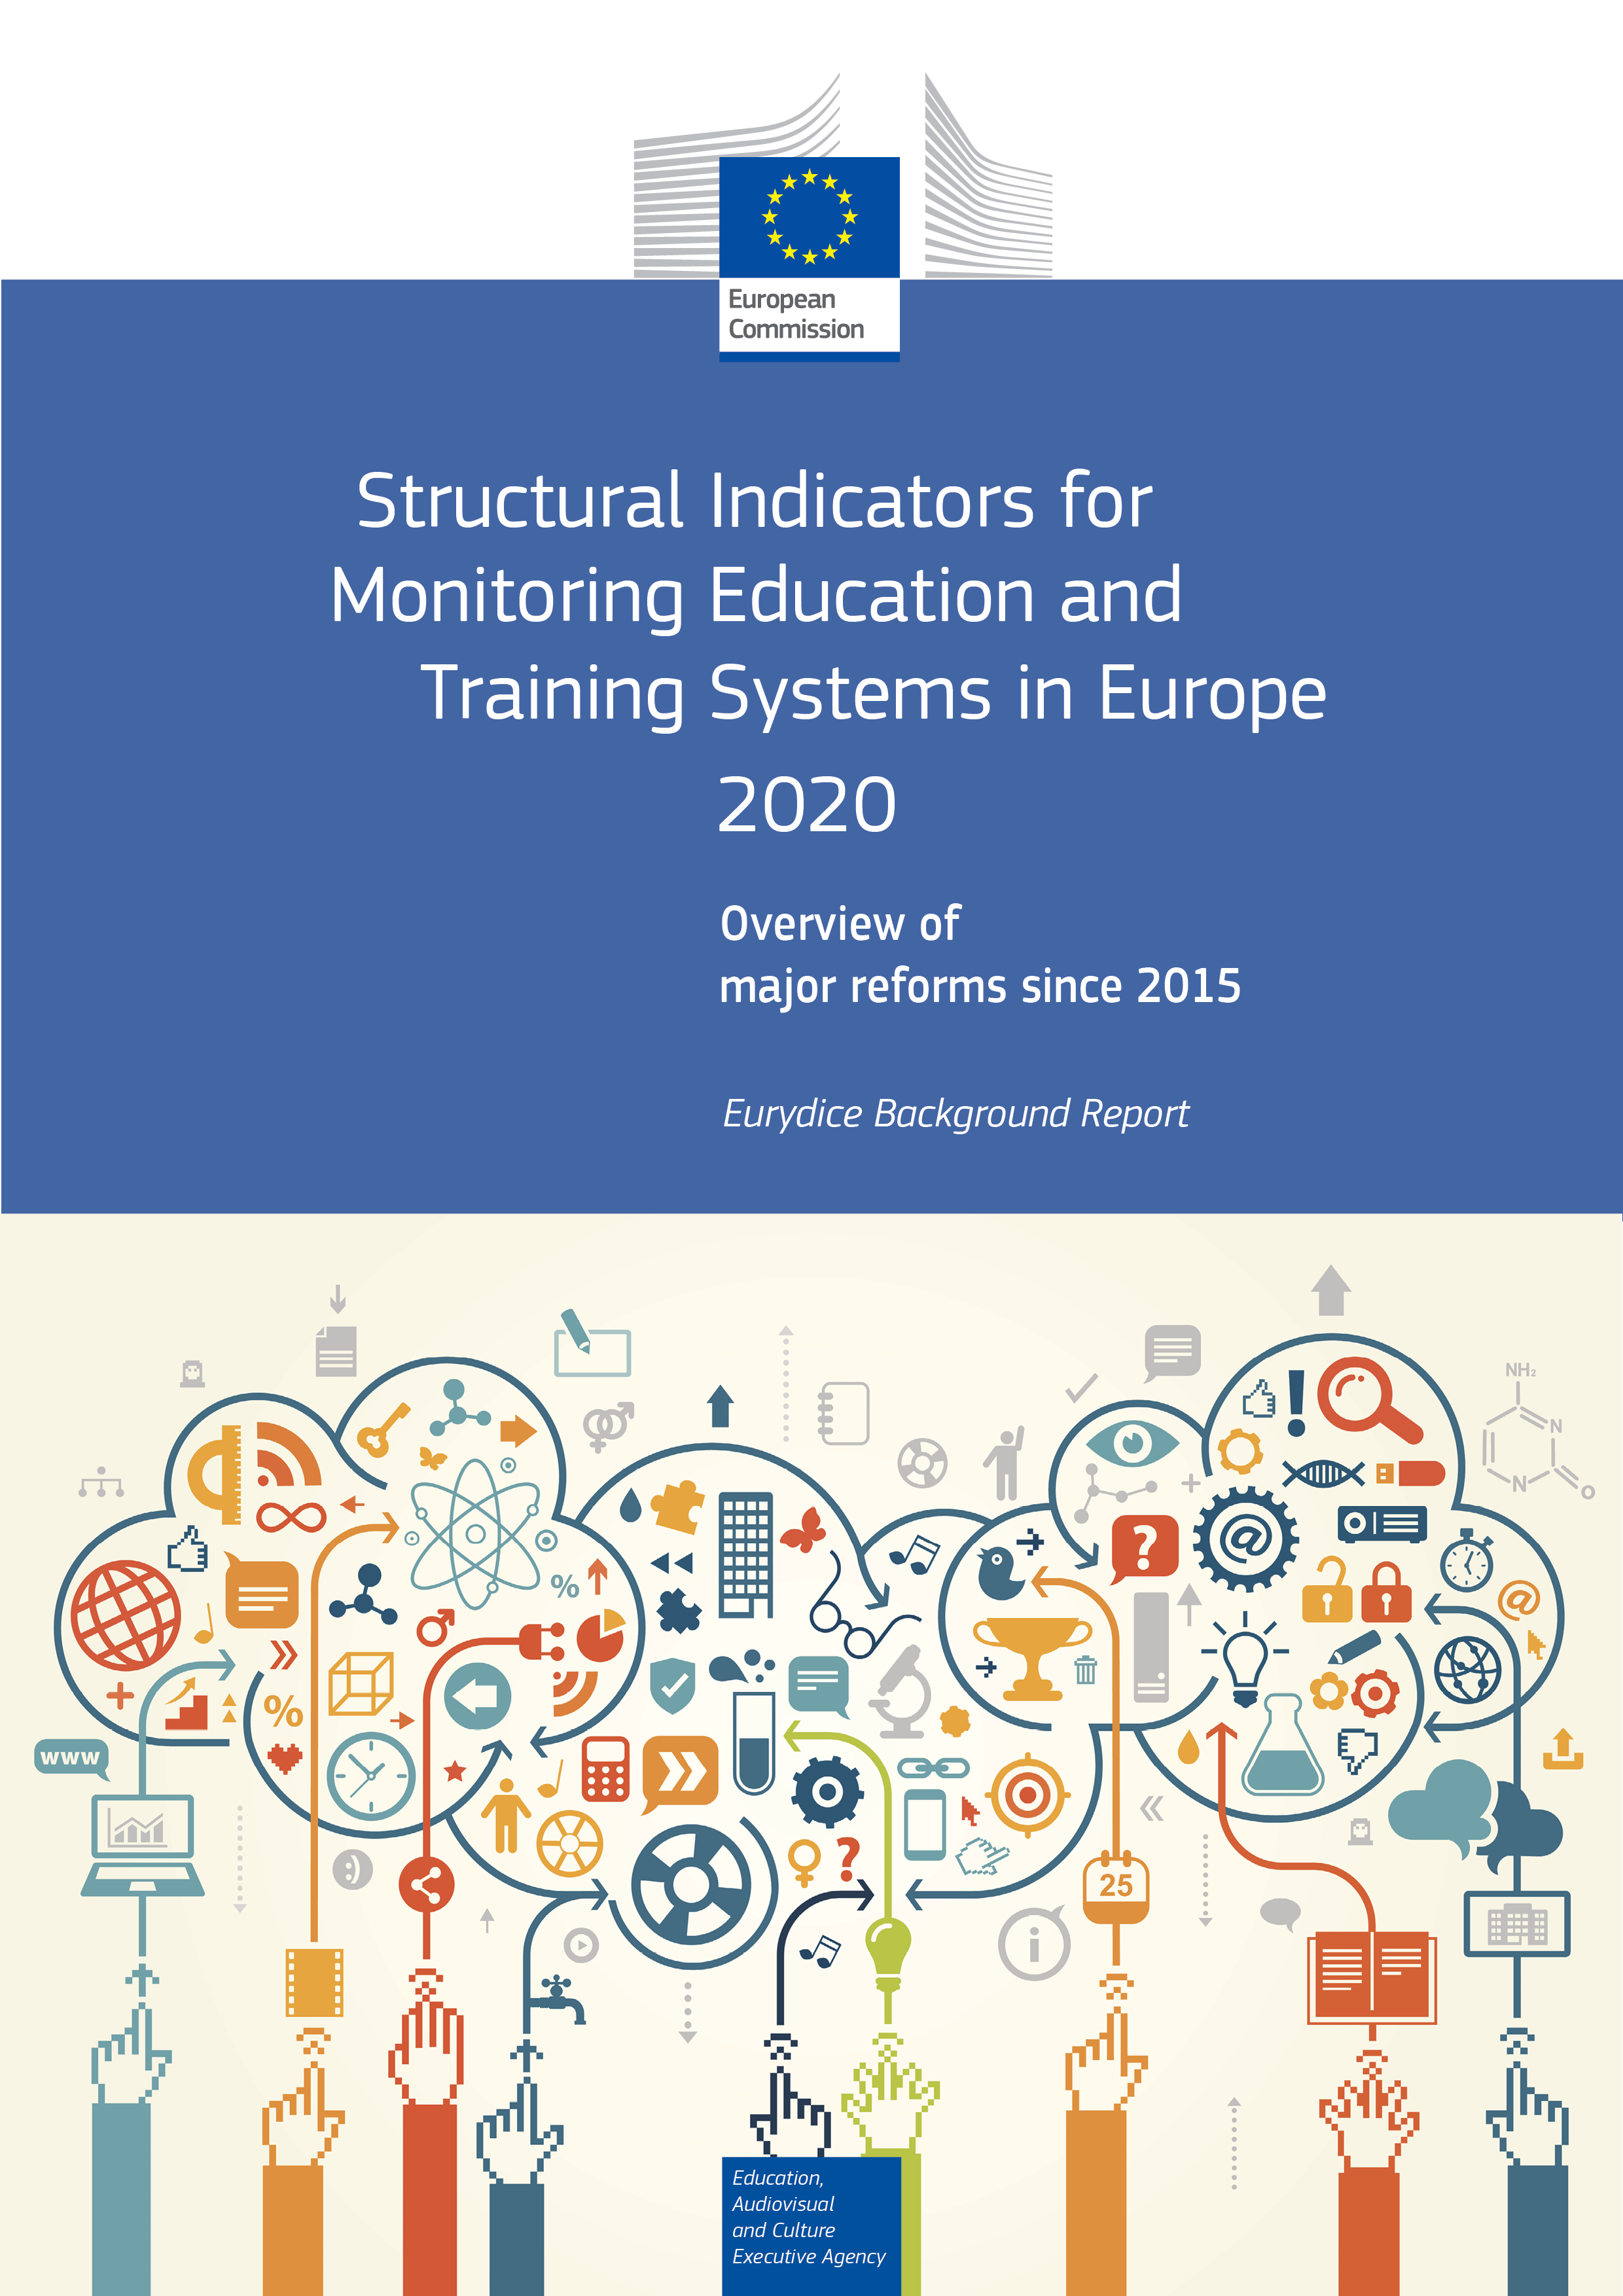 Strukturni pokazatelji za praćenje sustava obrazovanja i osposobljavanja u Europi (2020.) - Slika 1